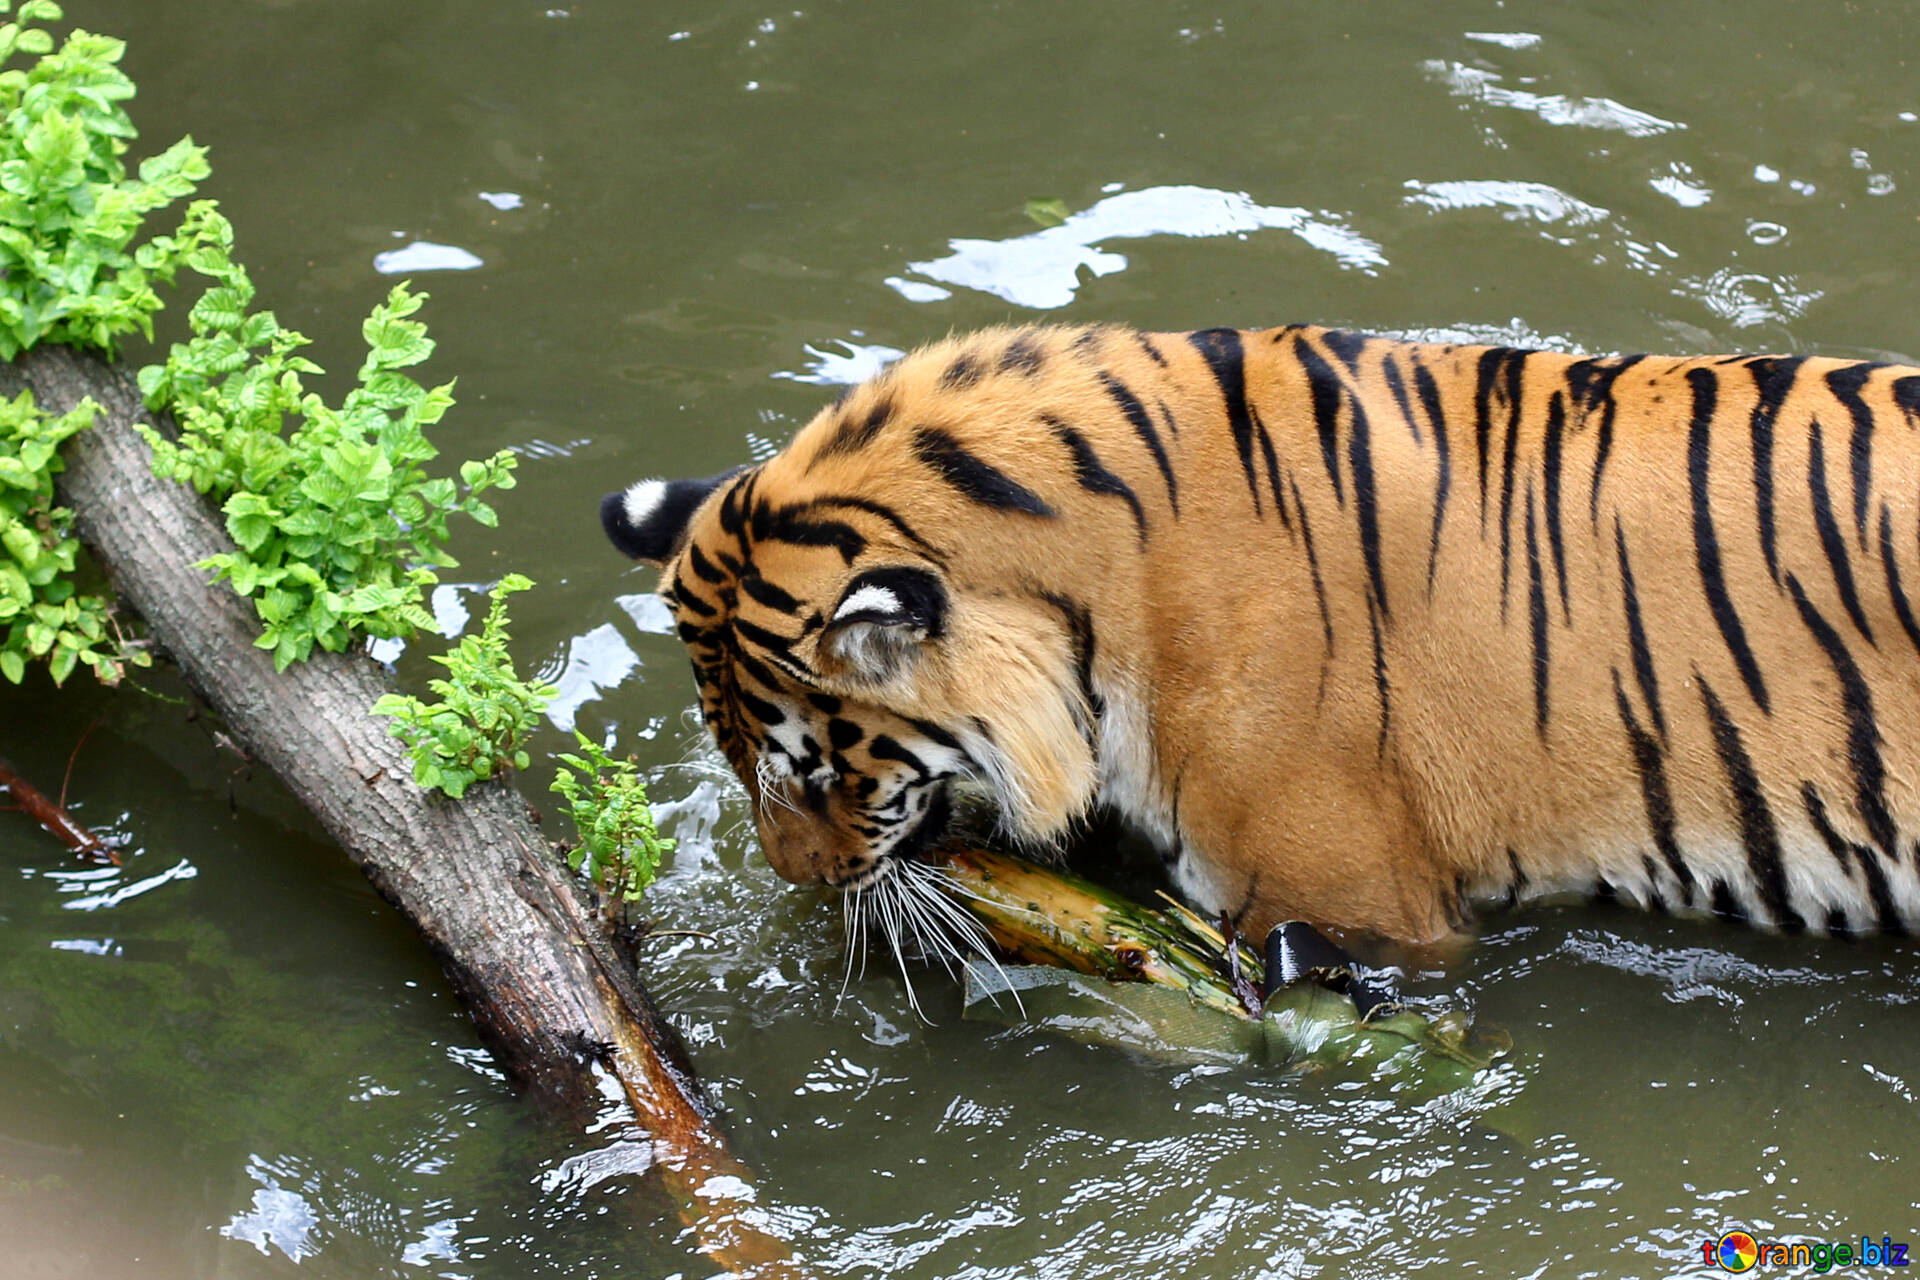 Tiger bathing free image - № 45713